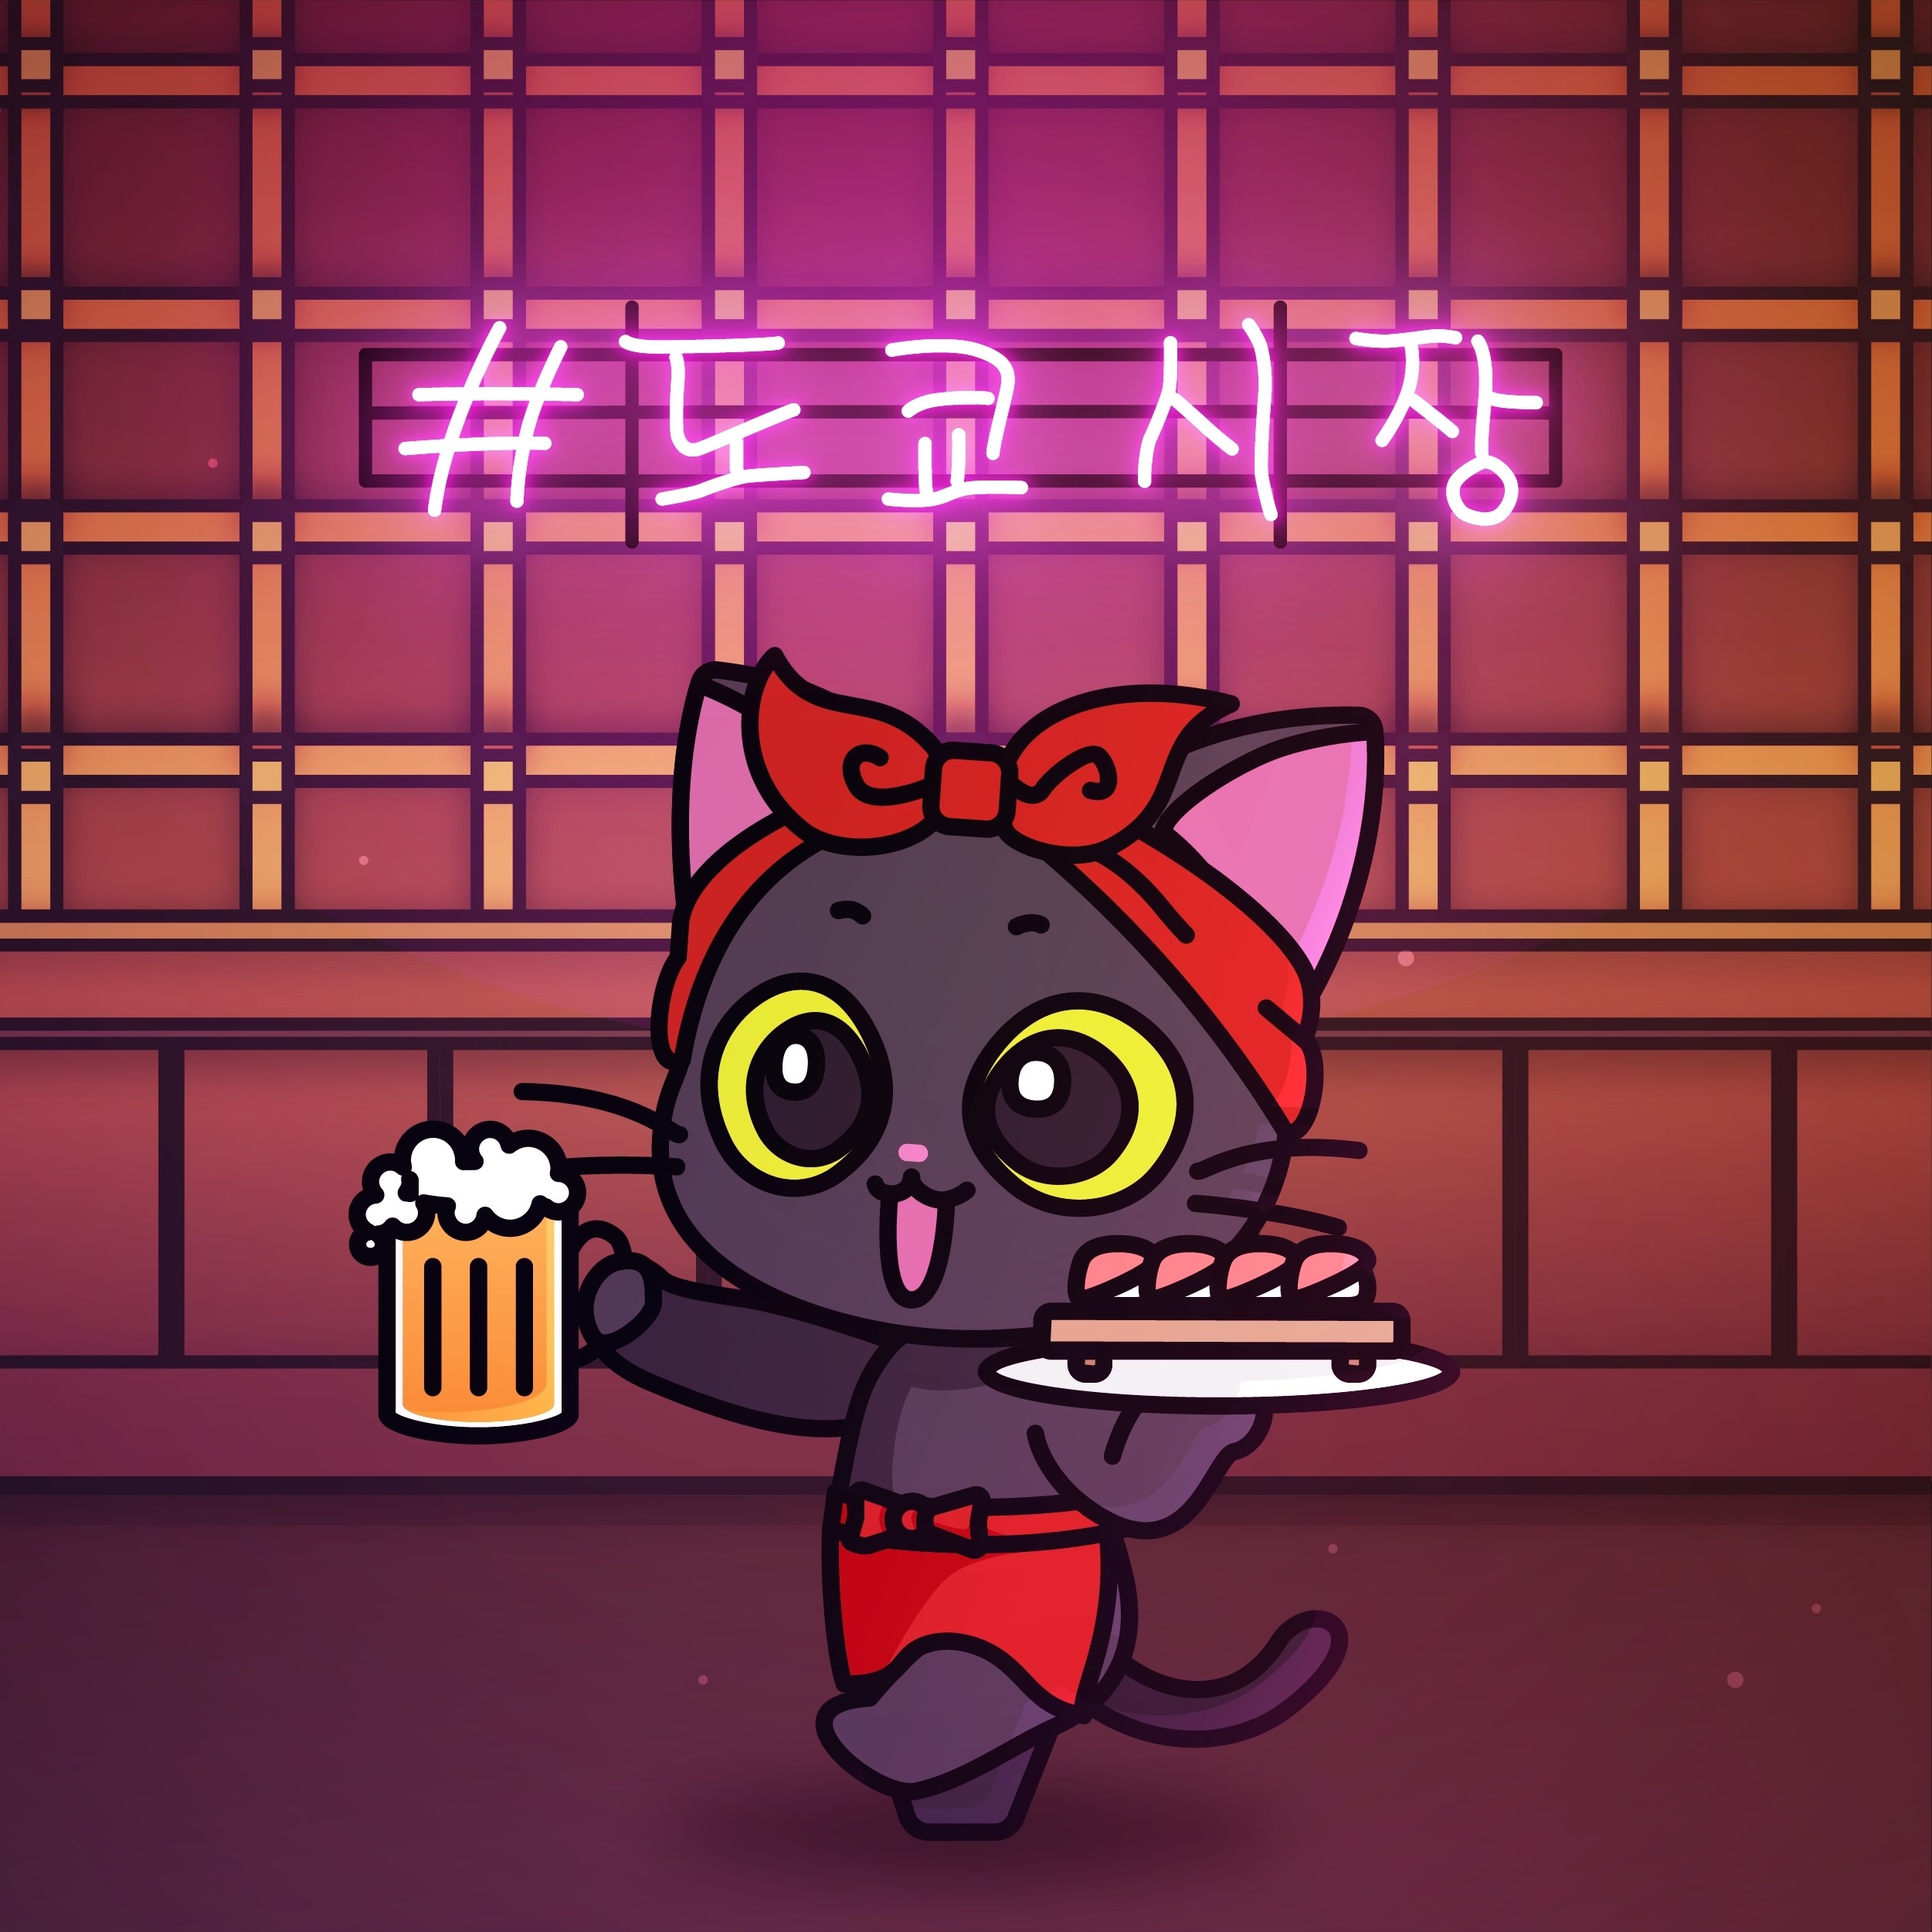 이자카야 검은 고양이 캐릭터 디자인, 캐릭터 포트폴리오 - 크몽